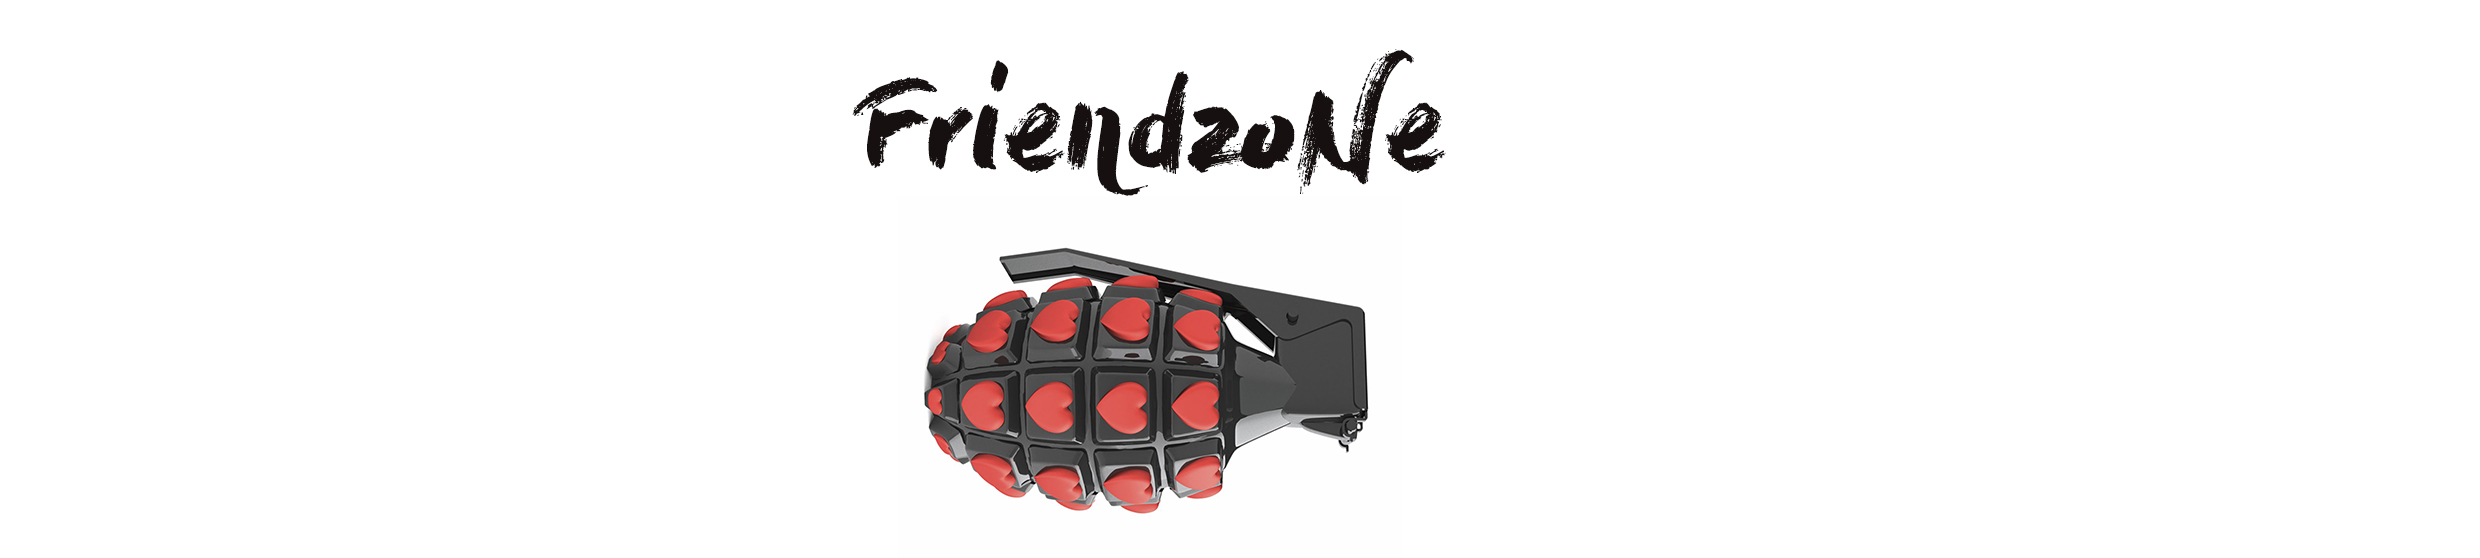 friendzonepart1